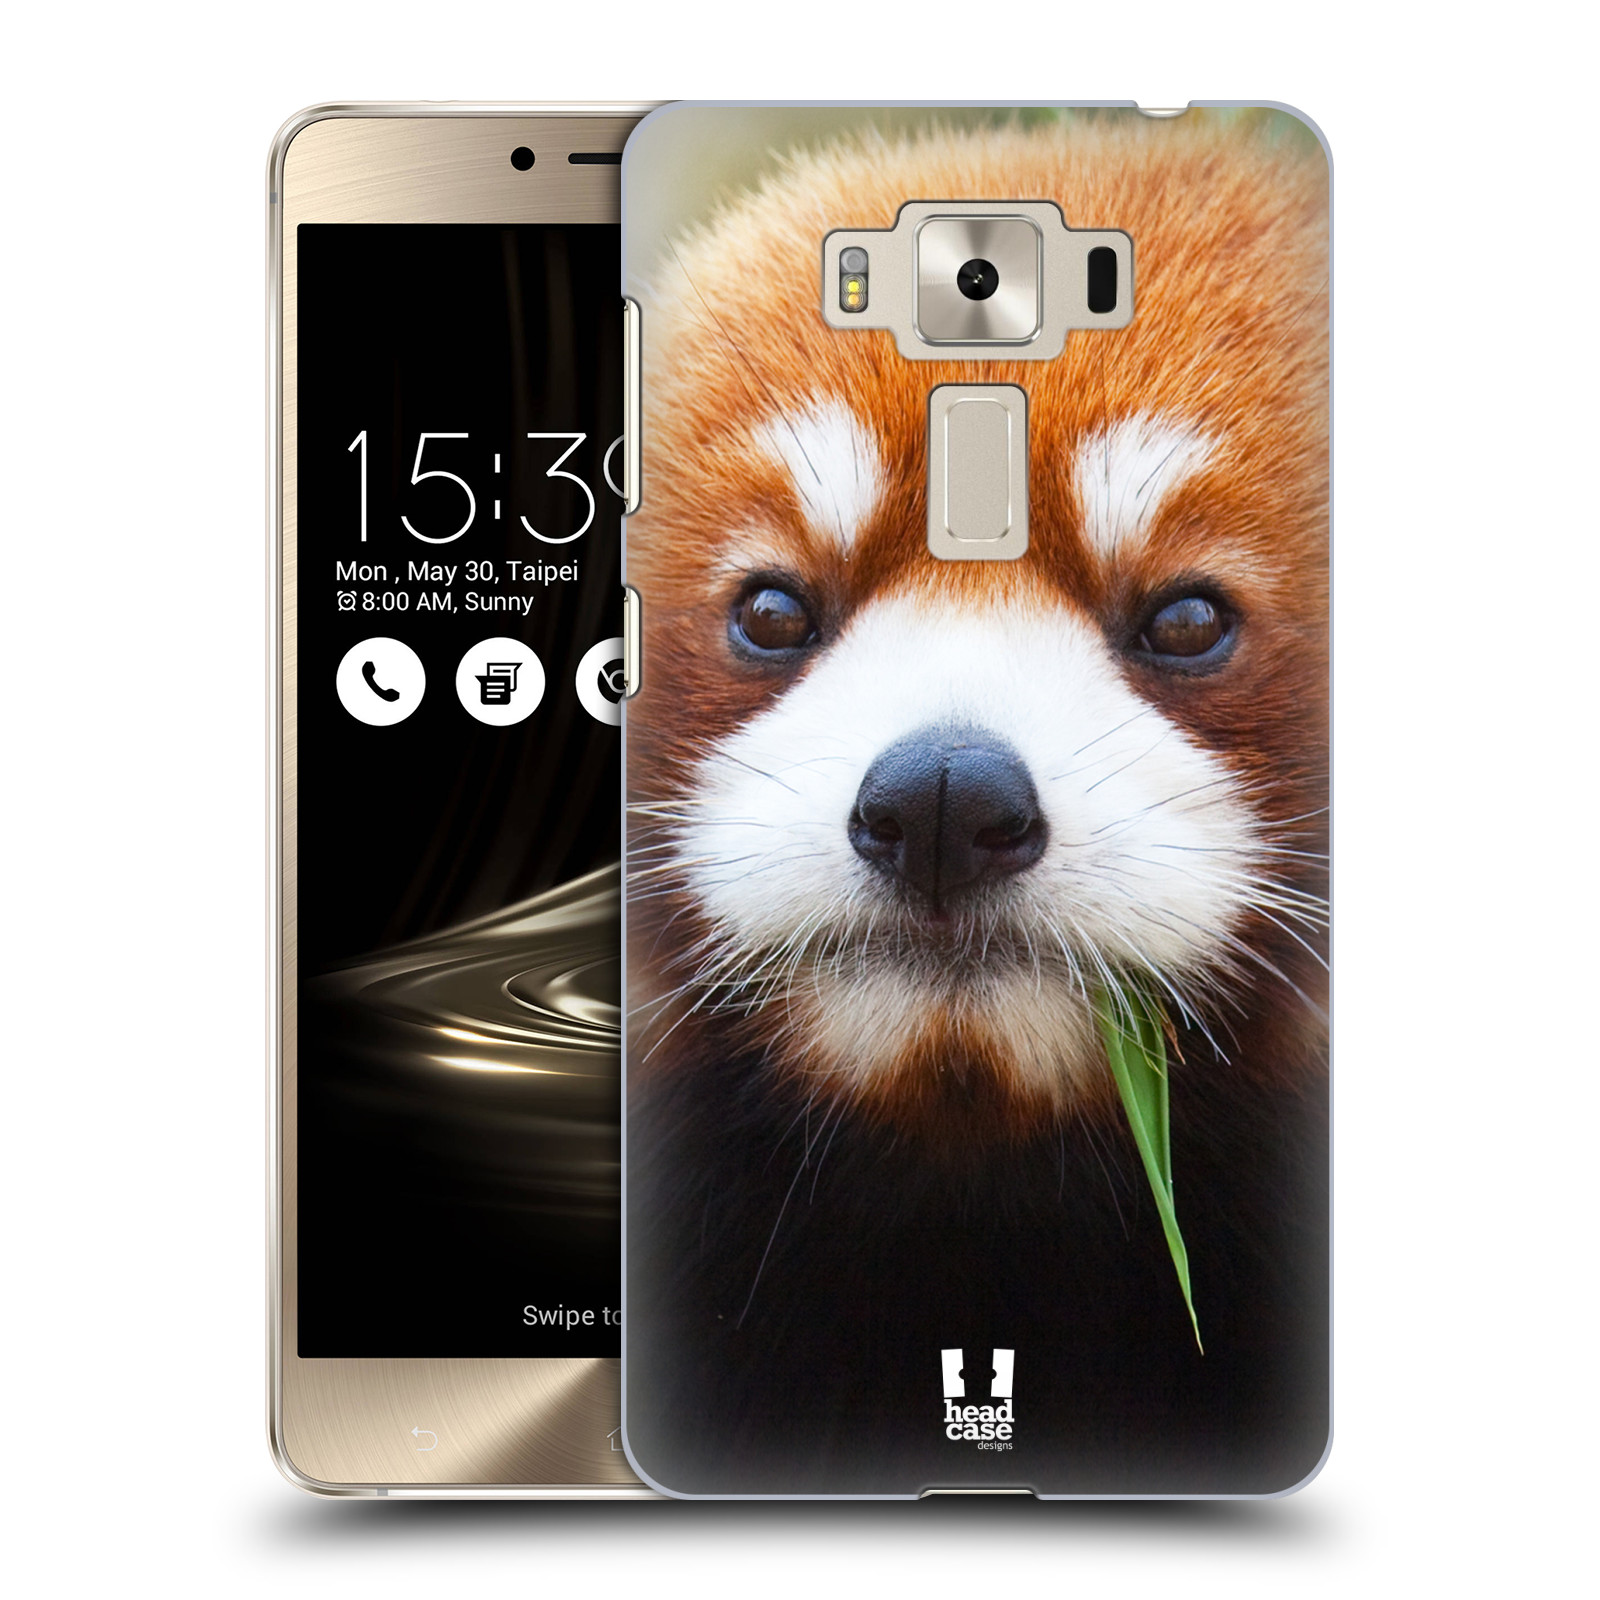 HEAD CASE plastový obal na mobil Asus Zenfone 3 DELUXE ZS550KL vzor Divočina, Divoký život a zvířata foto PANDA HNĚDÁ